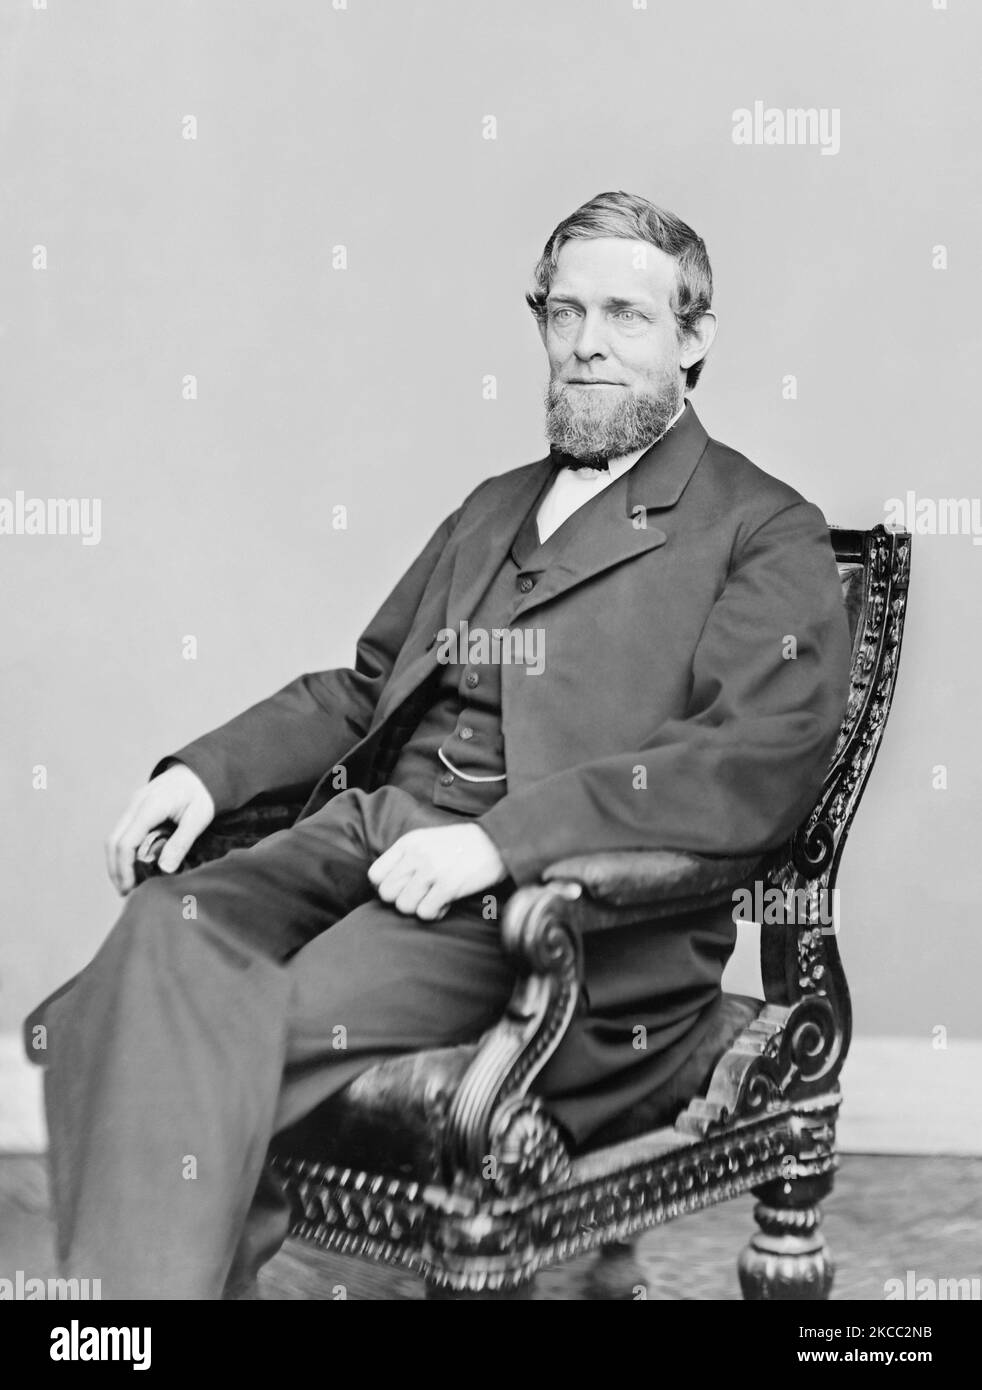 Retrato del Vicepresidente Schuyler Colfax, quien sirvió bajo el mando del Presidente Ulysses S. Grant. Foto de stock